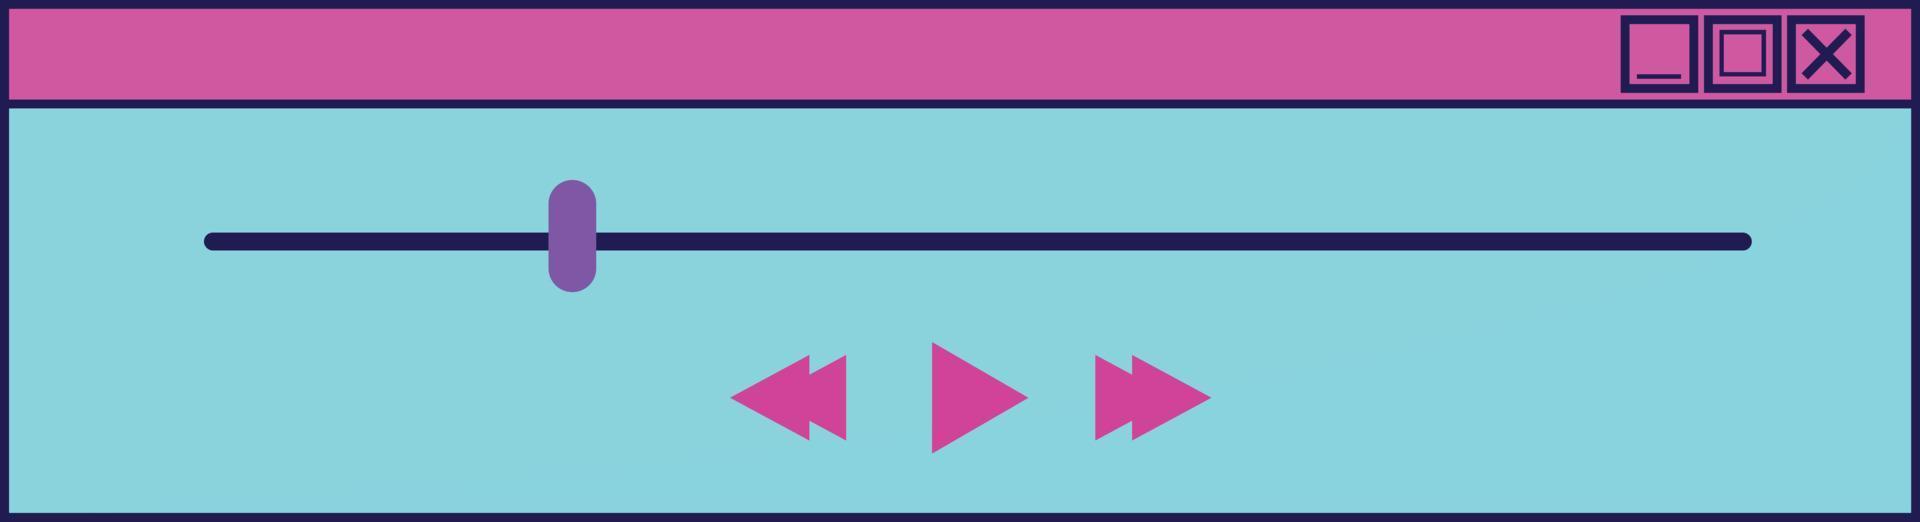 elementos de interface do usuário do computador retrowave vetor